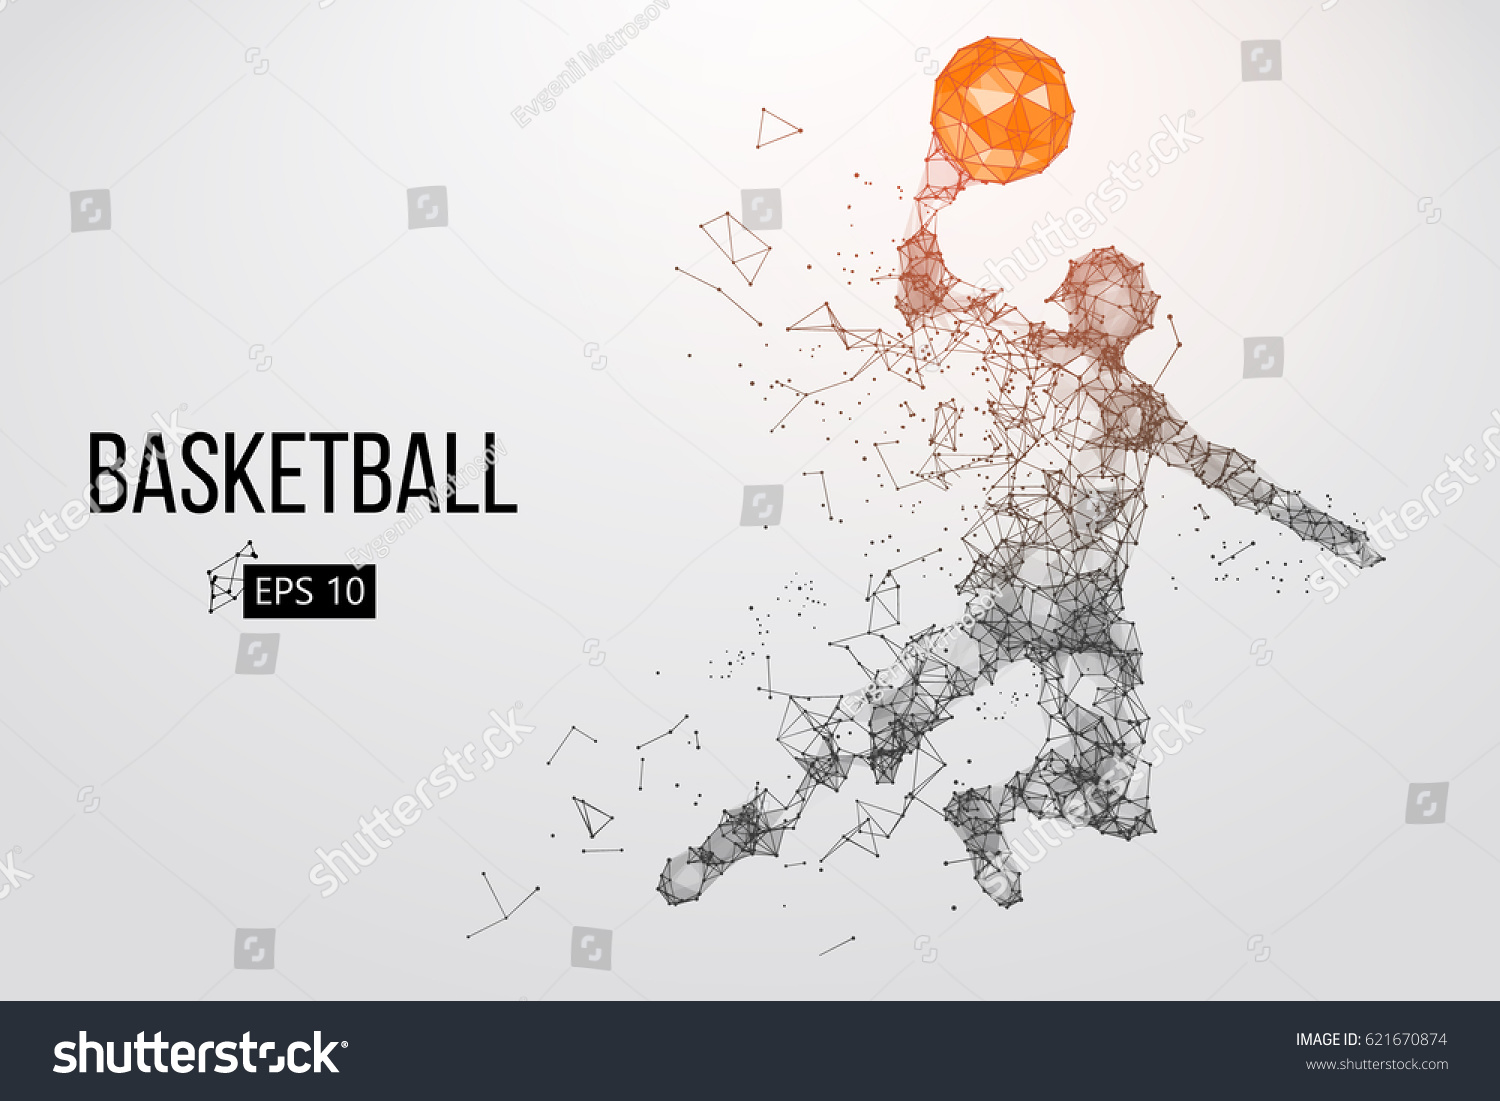 バスケットボール選手のシルエット 個別のレイヤー上のドット 線 三角形 テキスト 色の効果 背景は 1回のクリックで変更できます ベクターイラスト のベクター画像素材 ロイヤリティフリー